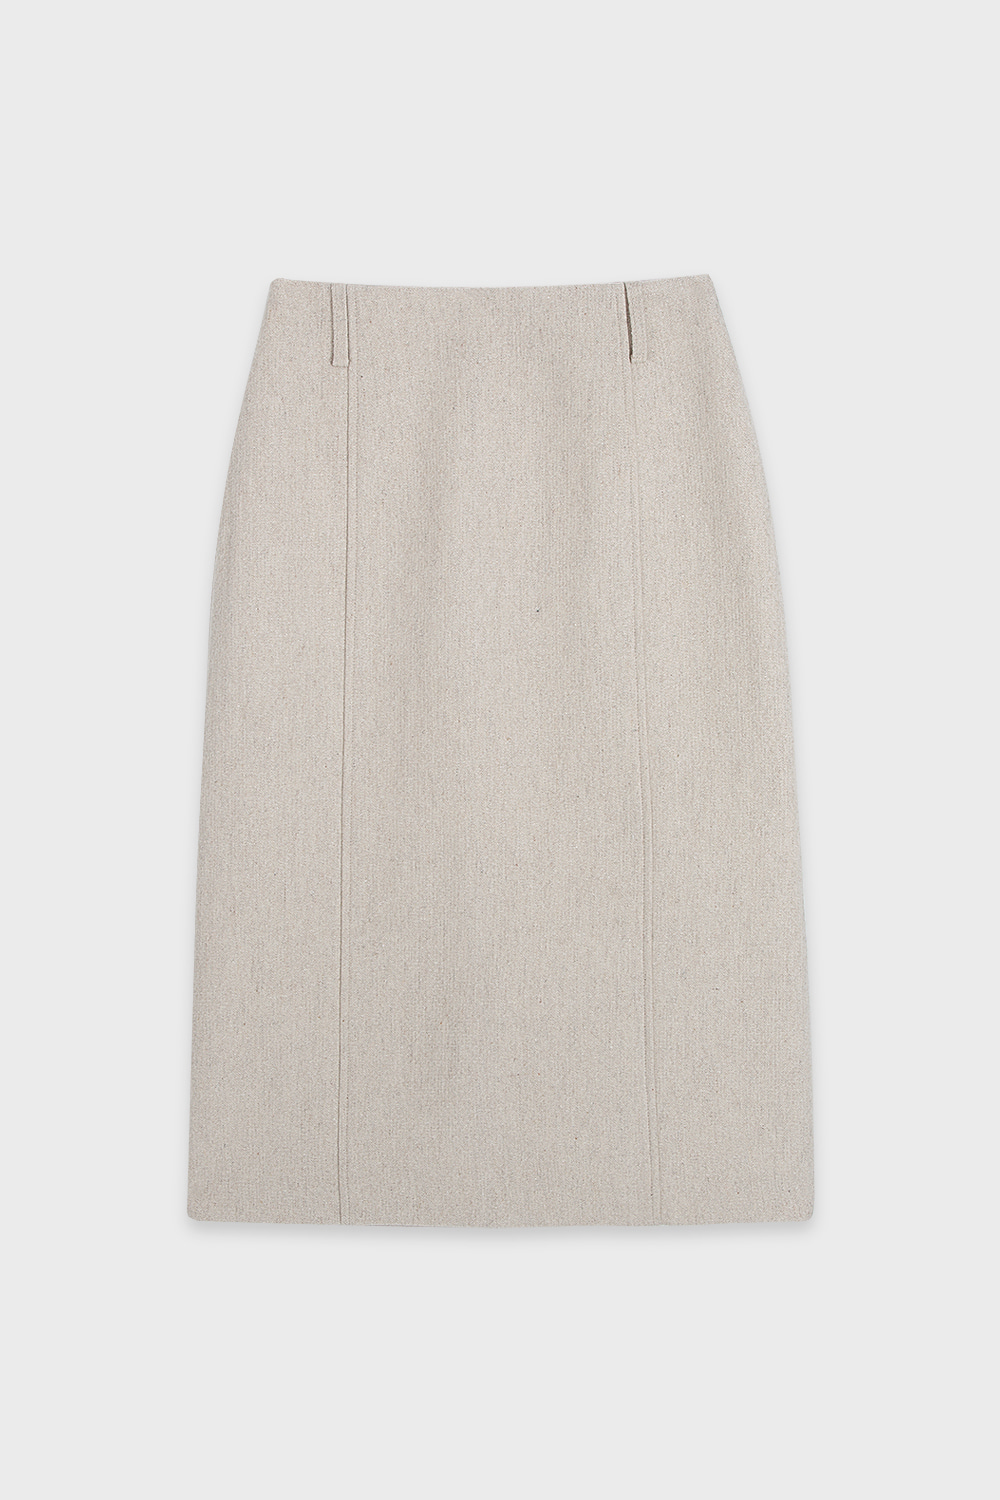 Wool Homespun Skirt Cream